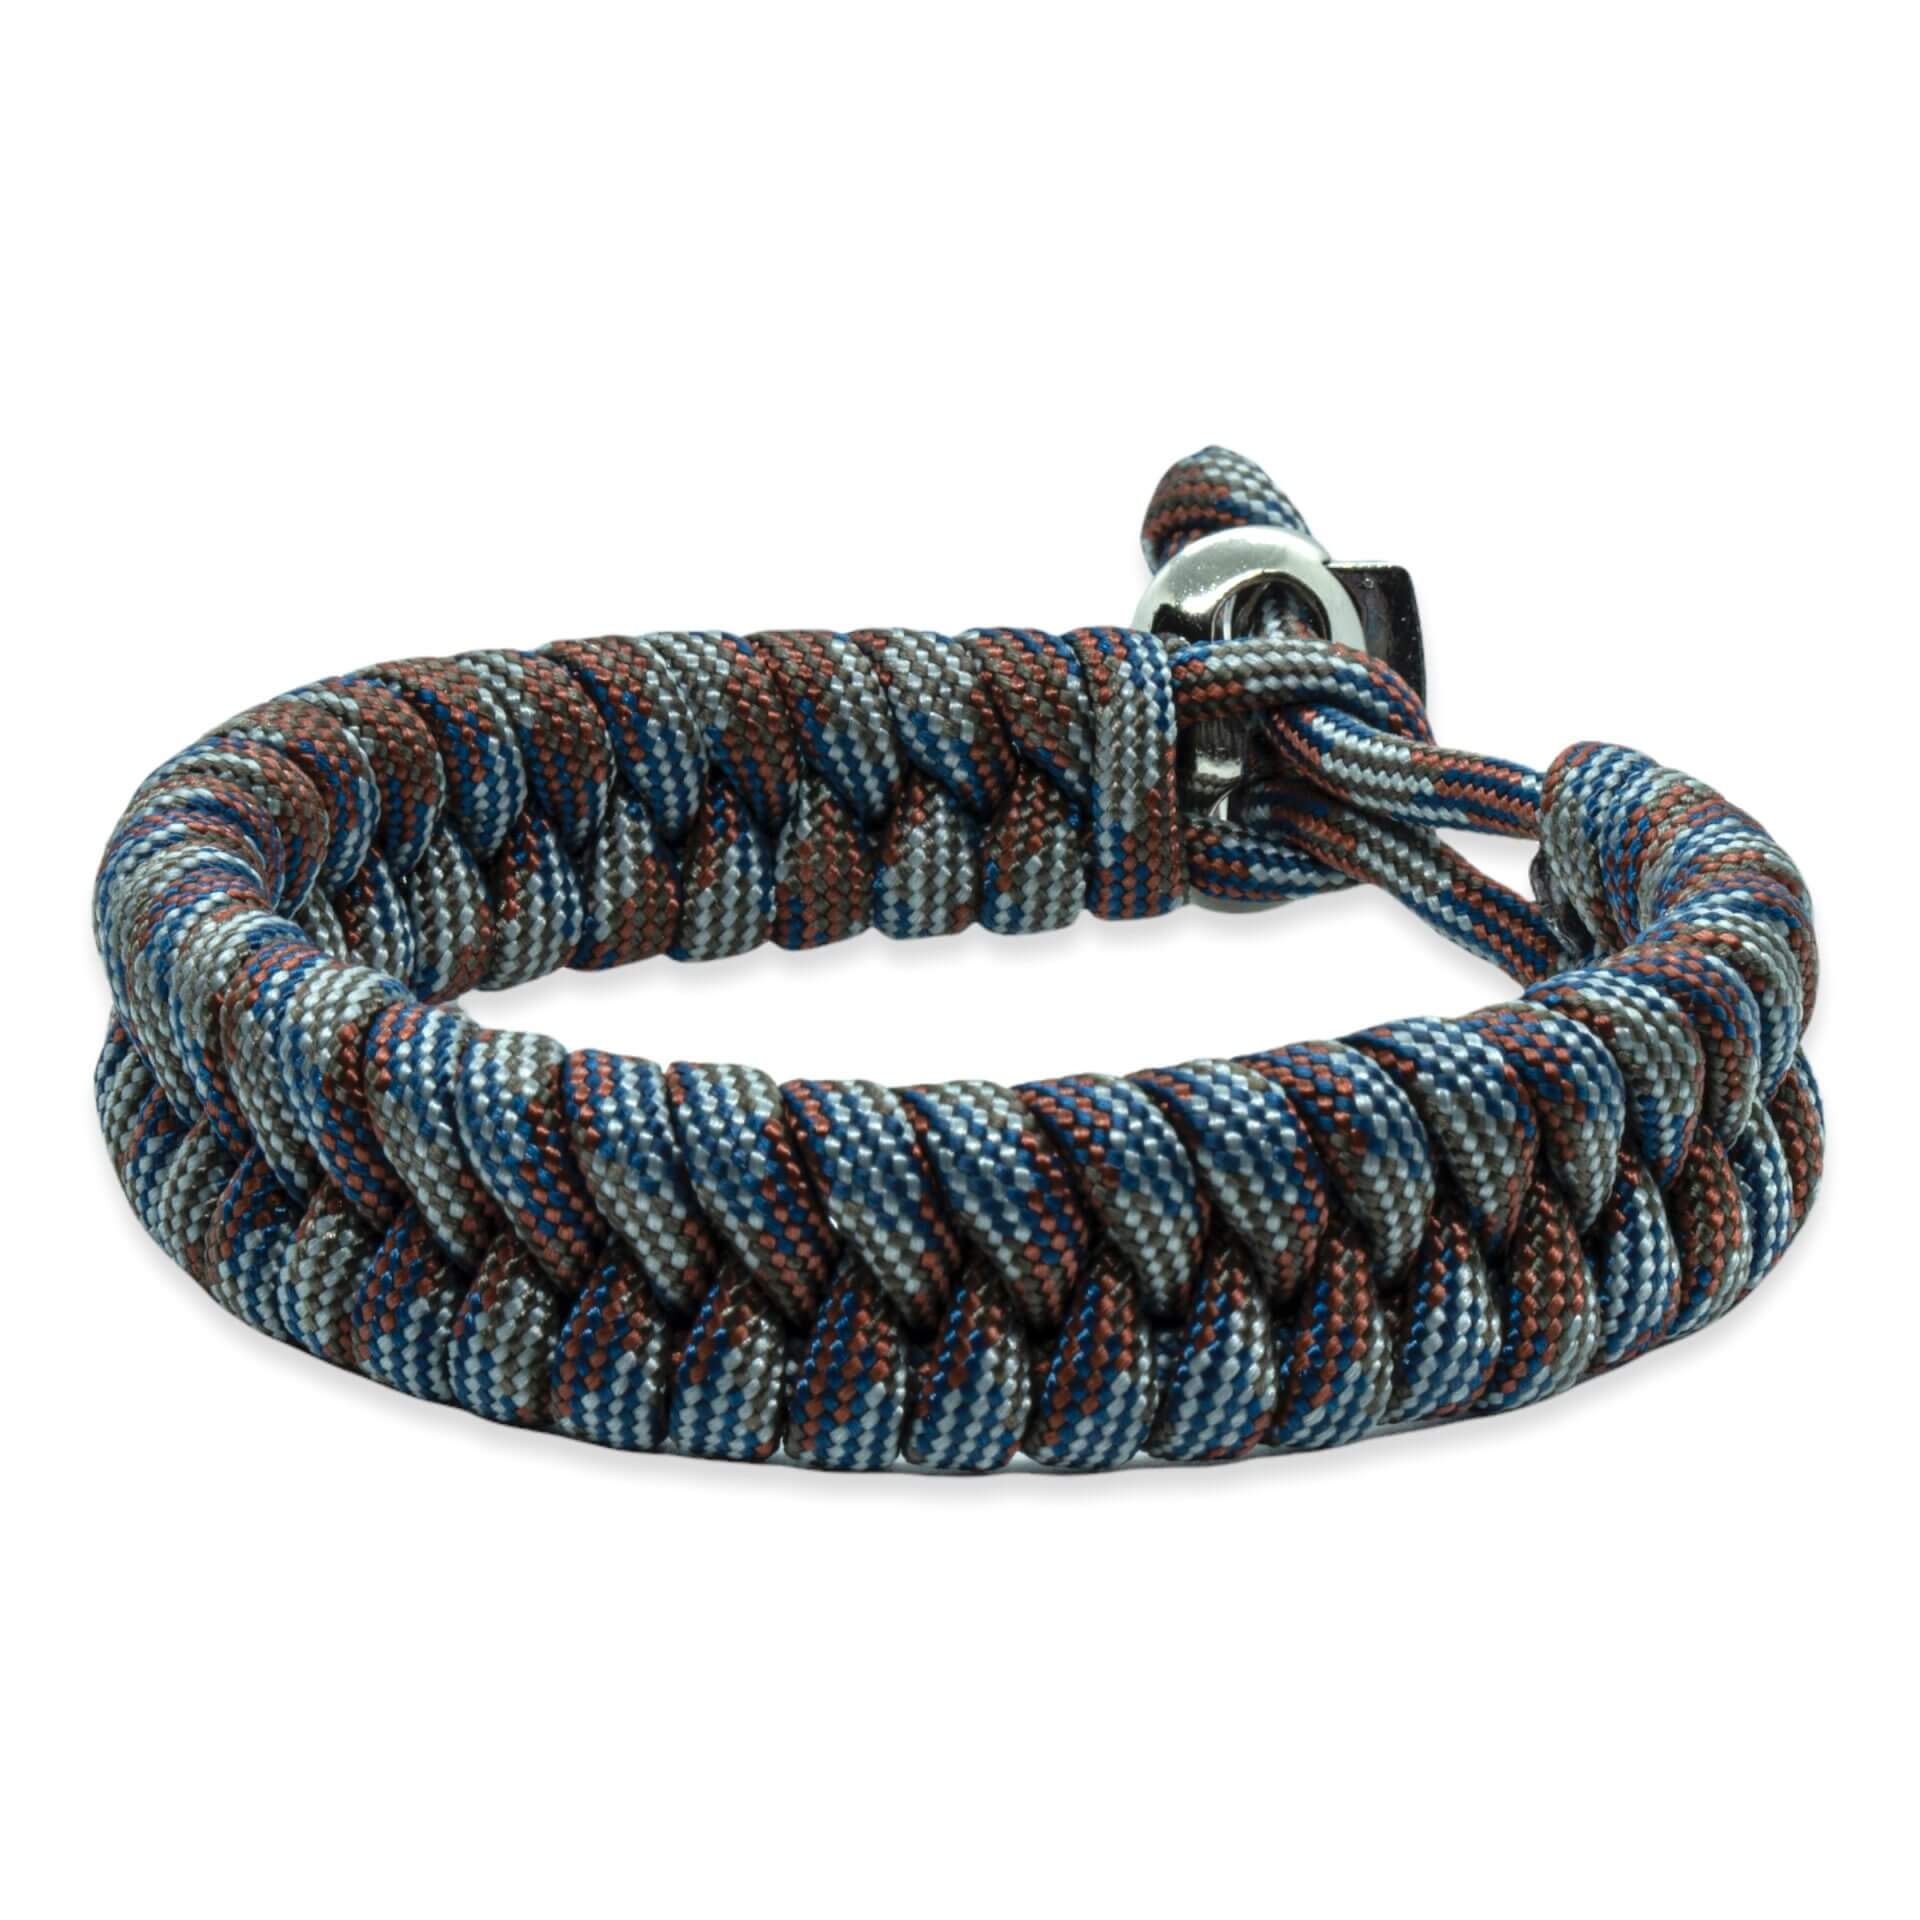 Zweedse staart armband - Bruin blauw grijze touw kleuren